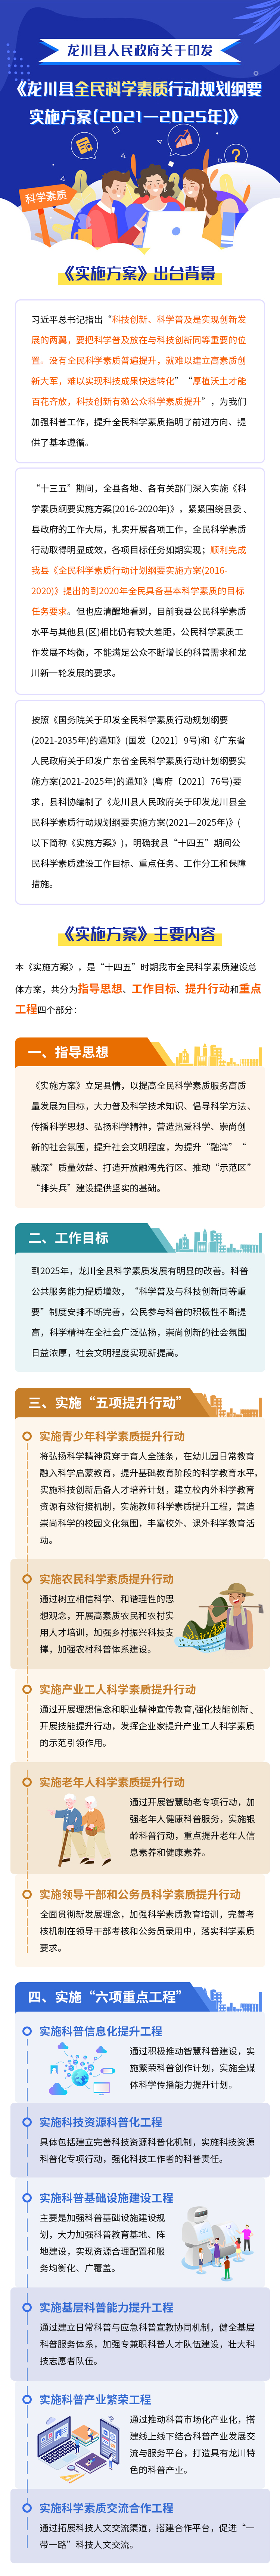 龙川县人民政府关于印发龙川县全民科学素质行动规划纲要实施方案（2021—2025年）的通知.jpg